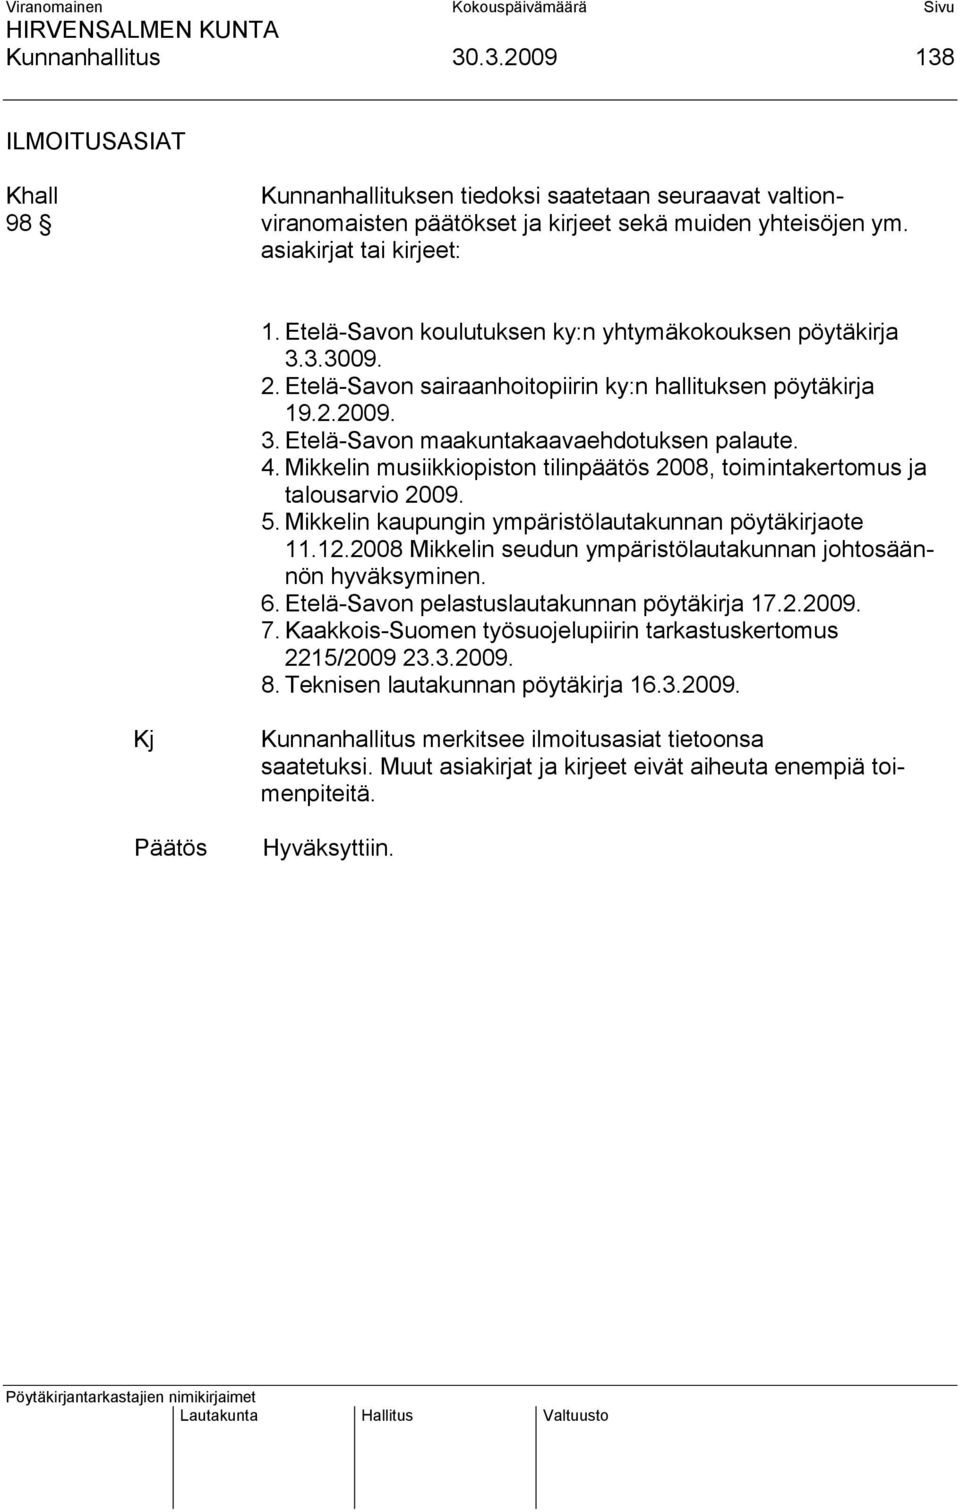 Mikkelin musiikkiopiston tilinpäätös 2008, toimintakertomus ja talousarvio 2009. 5. Mikkelin kaupungin ympäristölautakunnan pöytäkirjaote 11.12.